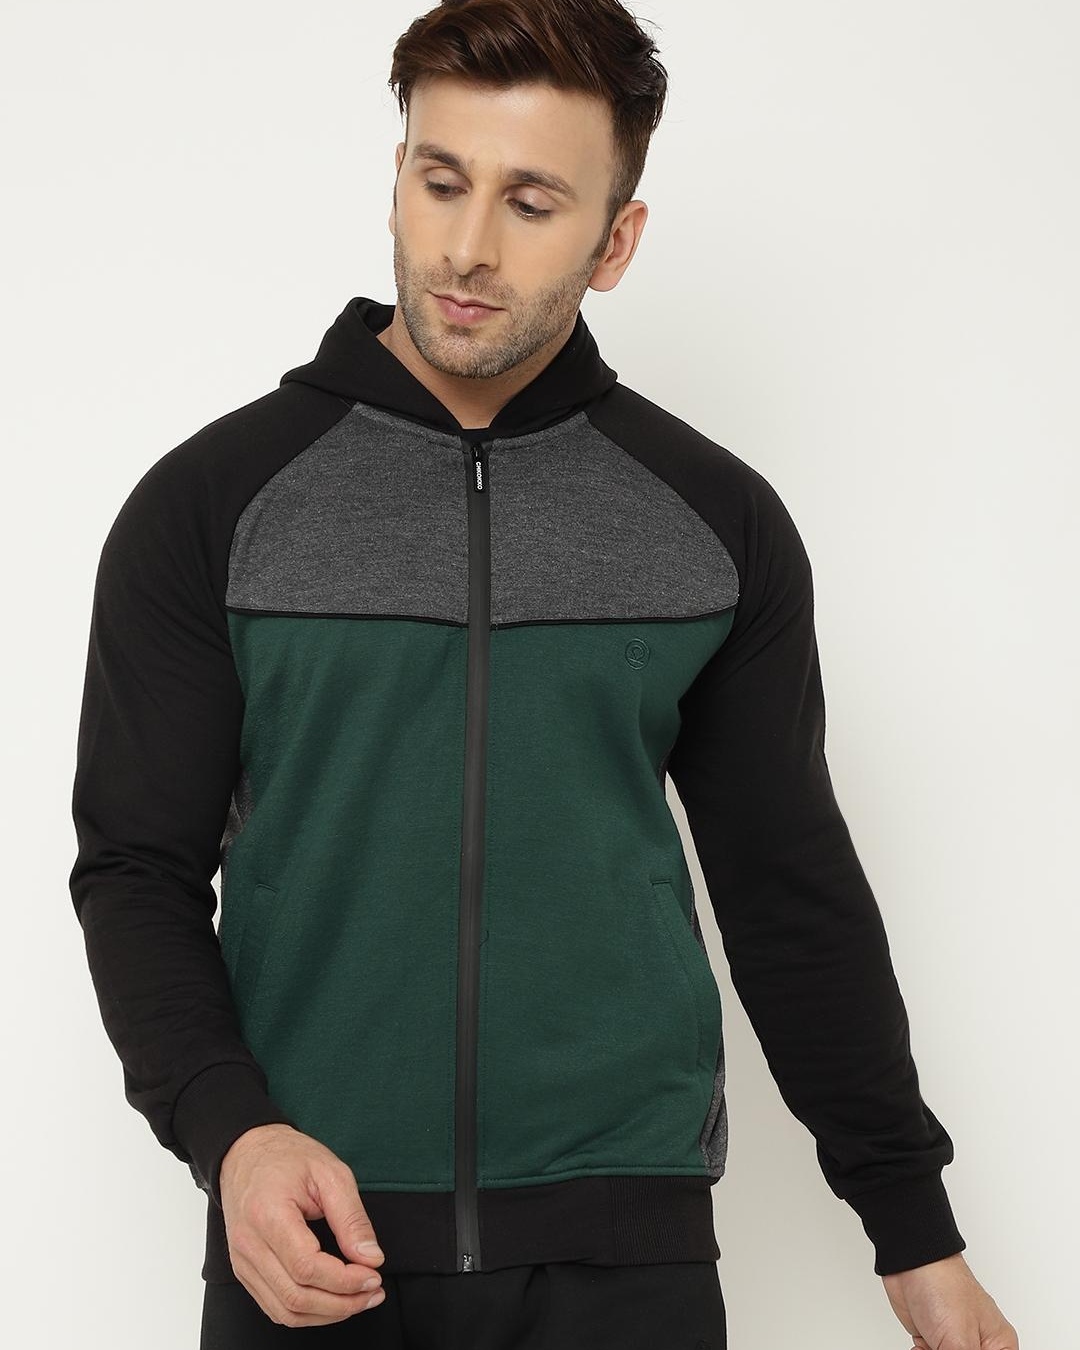 Buy Men's Black & Green Color Block Hooded Jacket Online at Bewakoof